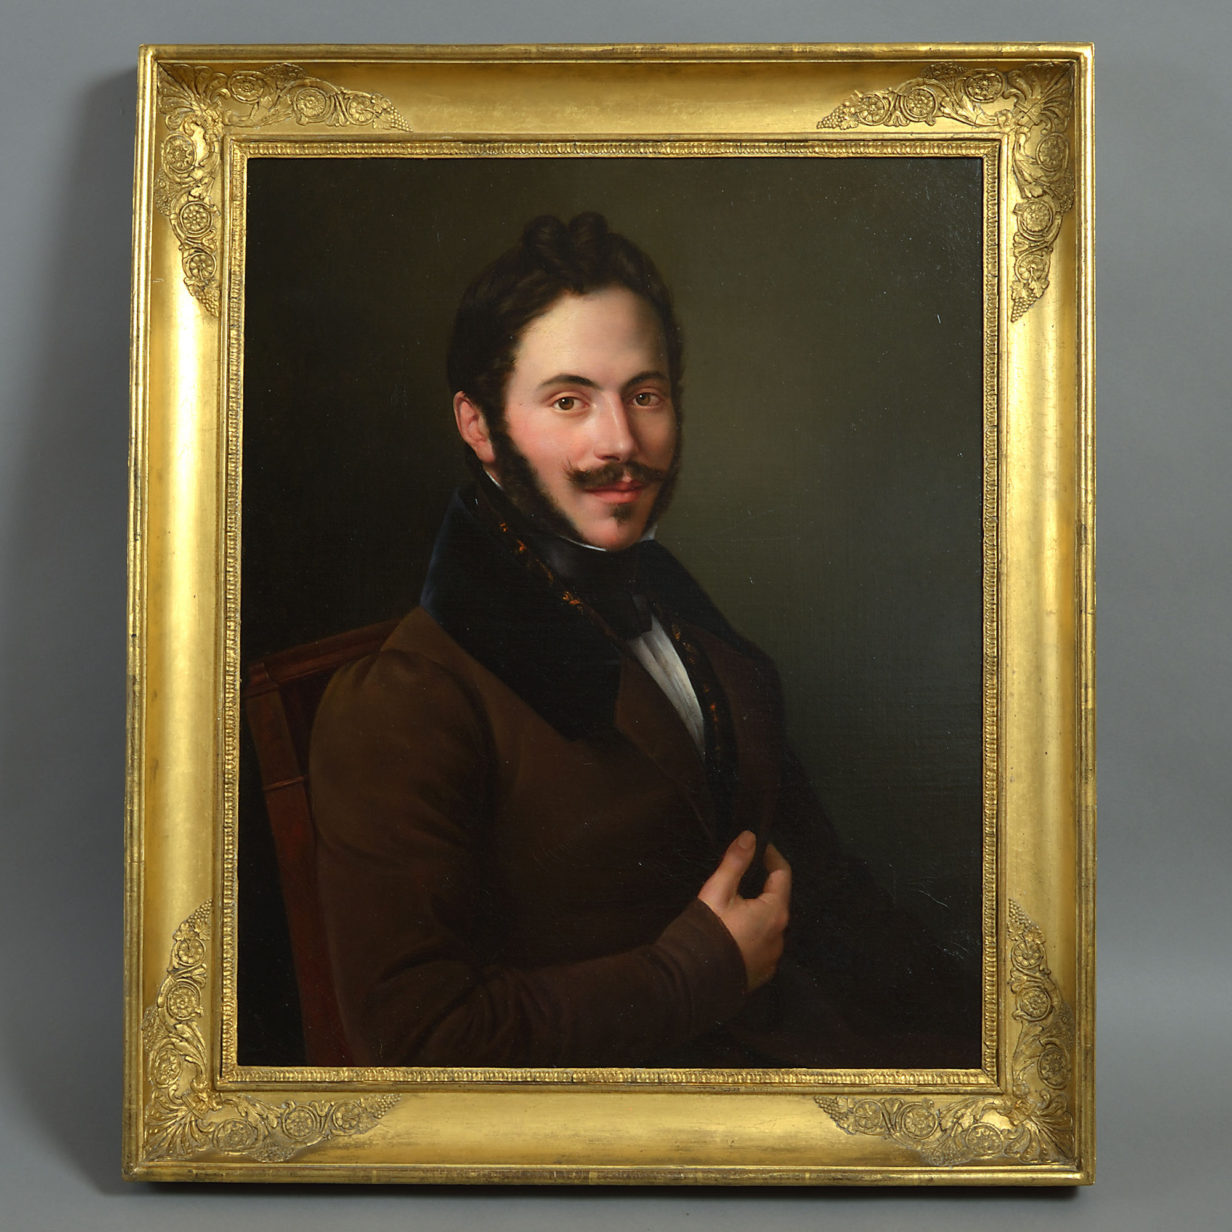 Edouard pingret (1788-1875) portrait of capt. Joseph marie louis alfred de bouffier